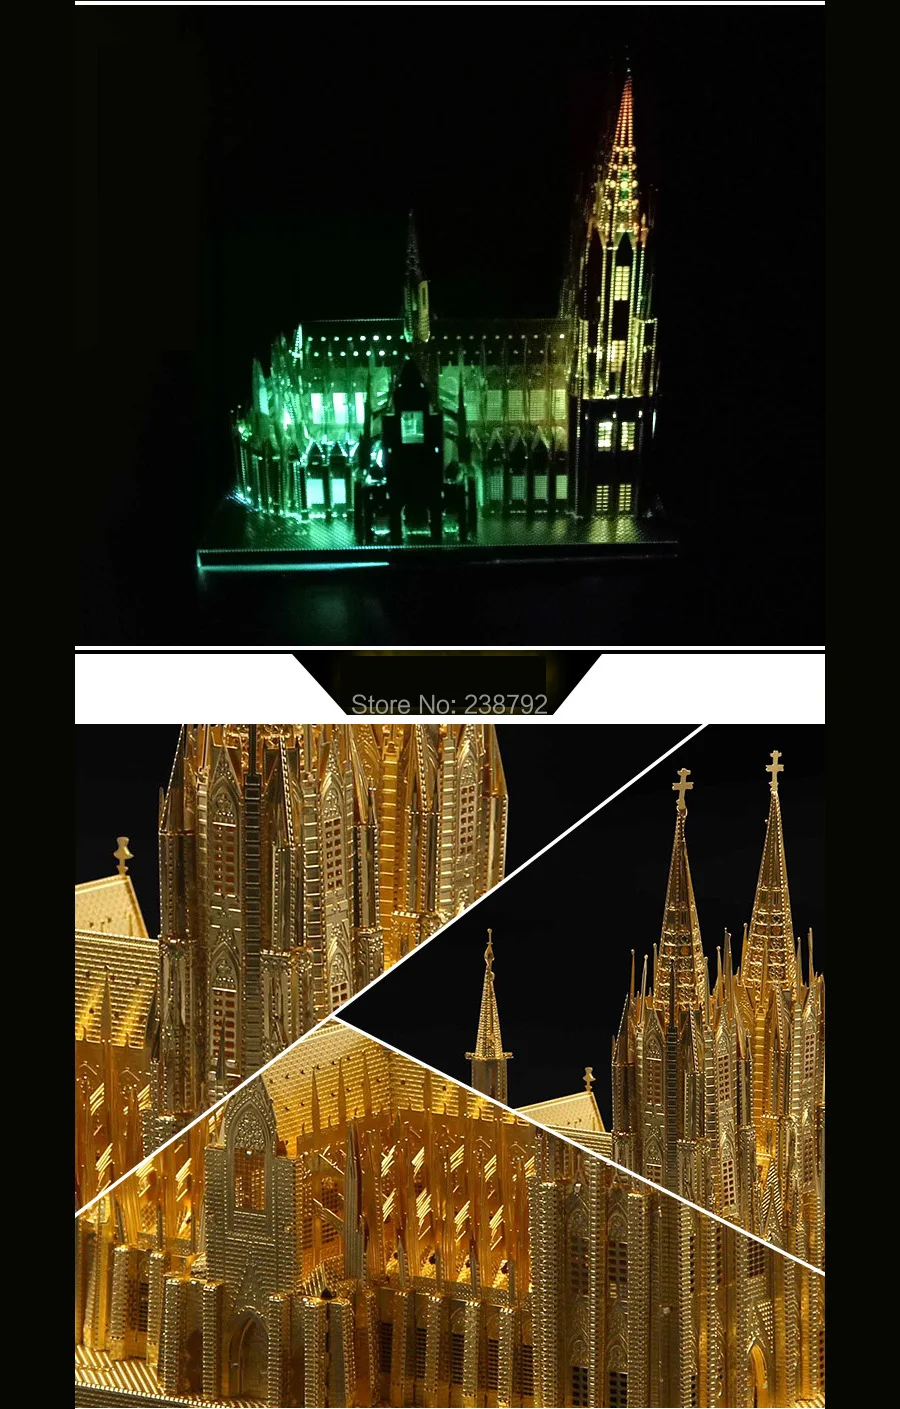 3D металлическая головоломка Кёльнский собор строительные модели наборы DIY Миниатюрные 3D лазерная резка собрать головоломки игрушки для детей и взрослых